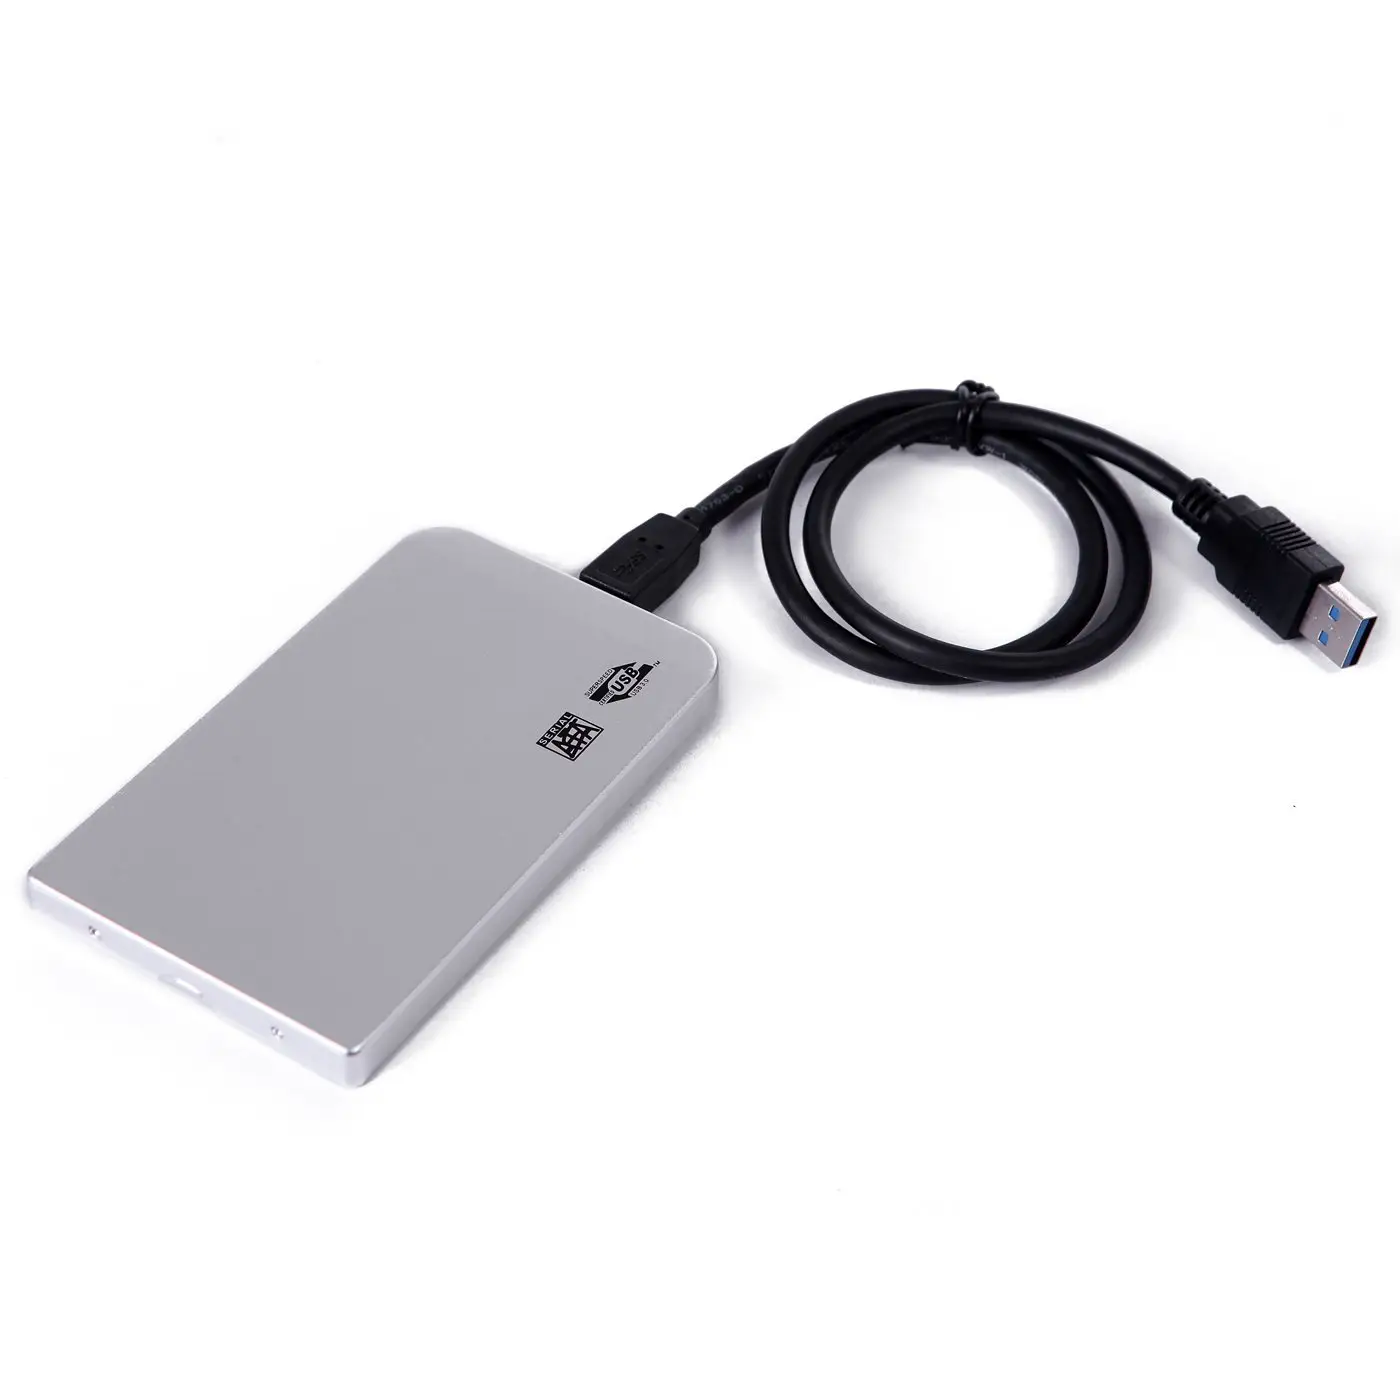 Super sottile in alluminio bianco custodia esterna Hdd 2.5 HDD USB 3.0 per 2tb Stock nero argento blu rosso chiusure per finestre in alluminio